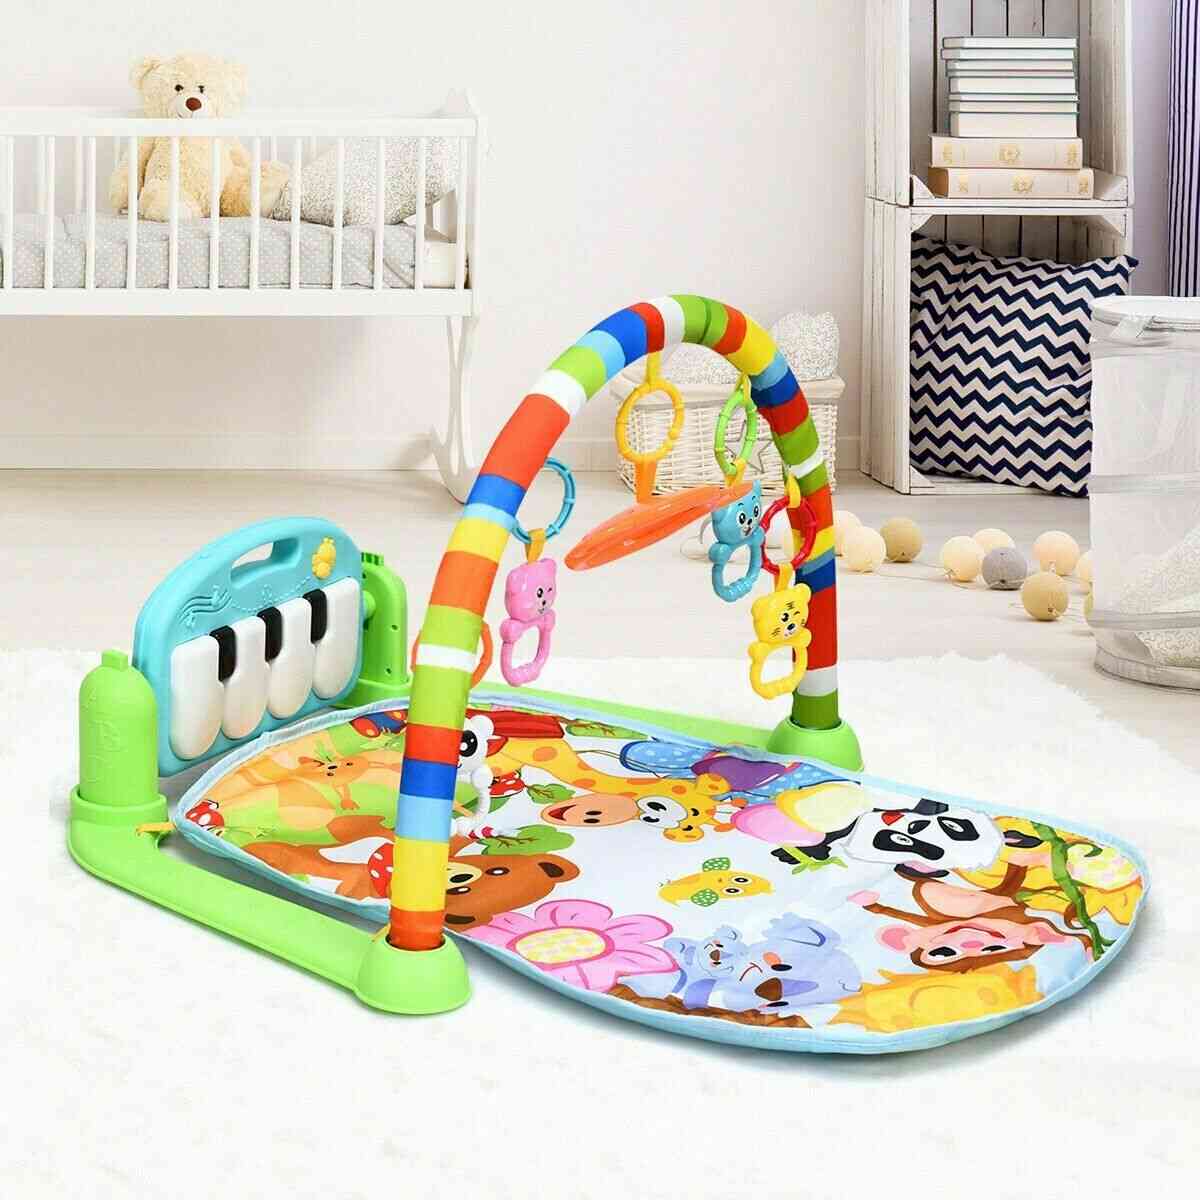 Baby gym speelkleed 0-12 maanden ontwikkelen tapijt, zachte rammelaars muzikaal speelgoed voor baby's games - a